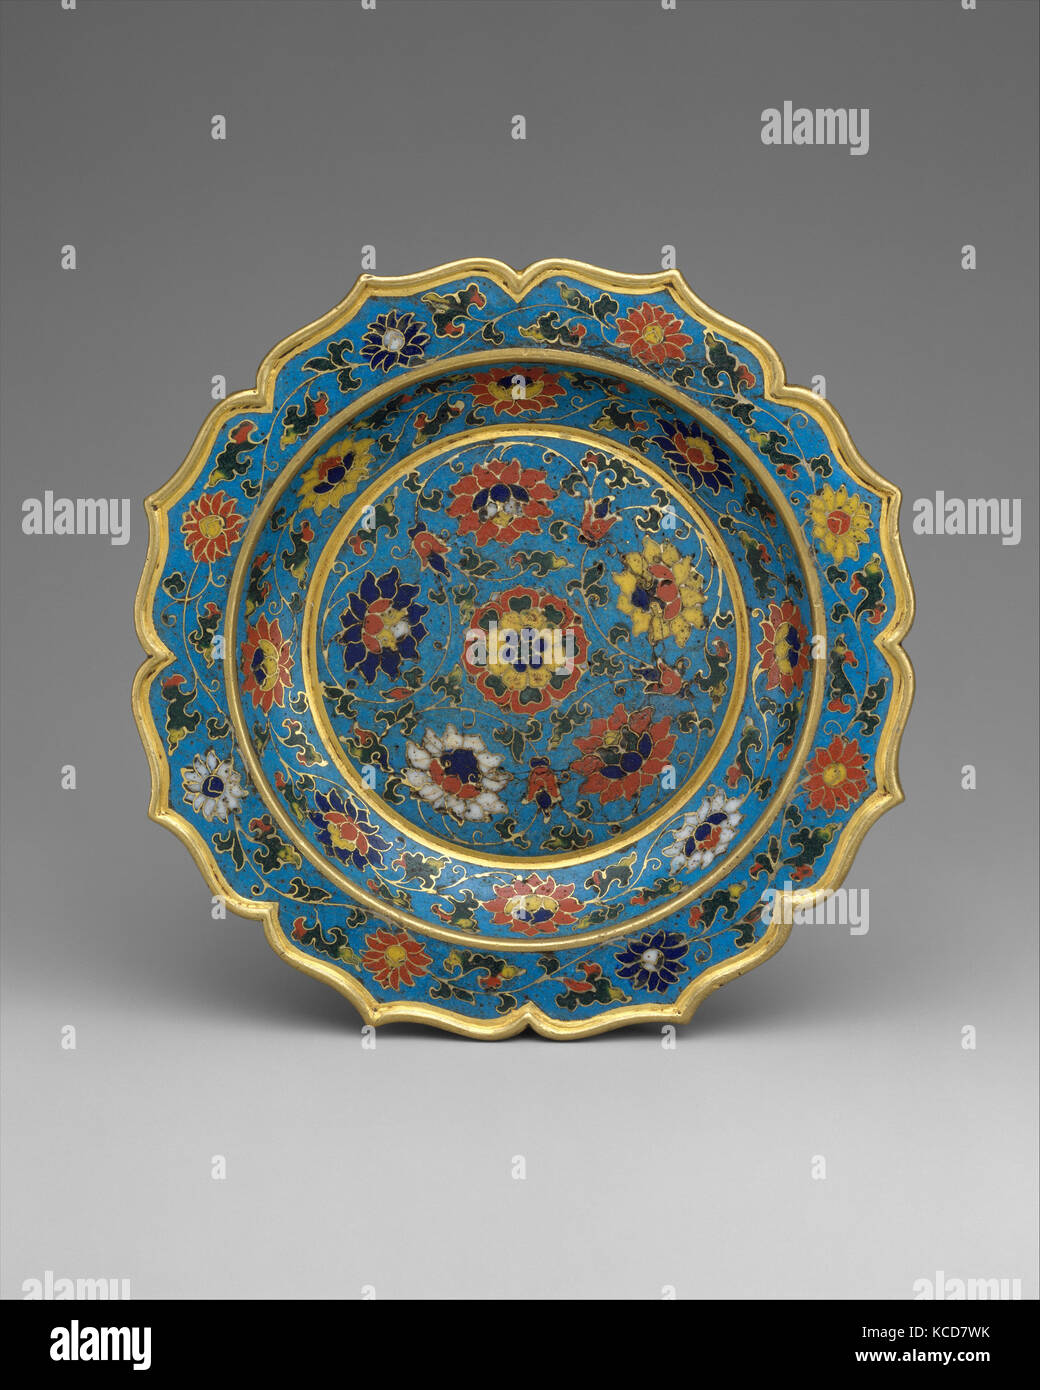 明早期 掐絲琺瑯菱花口碟, Dish with scalloped rim, early 15th century Stock Photo